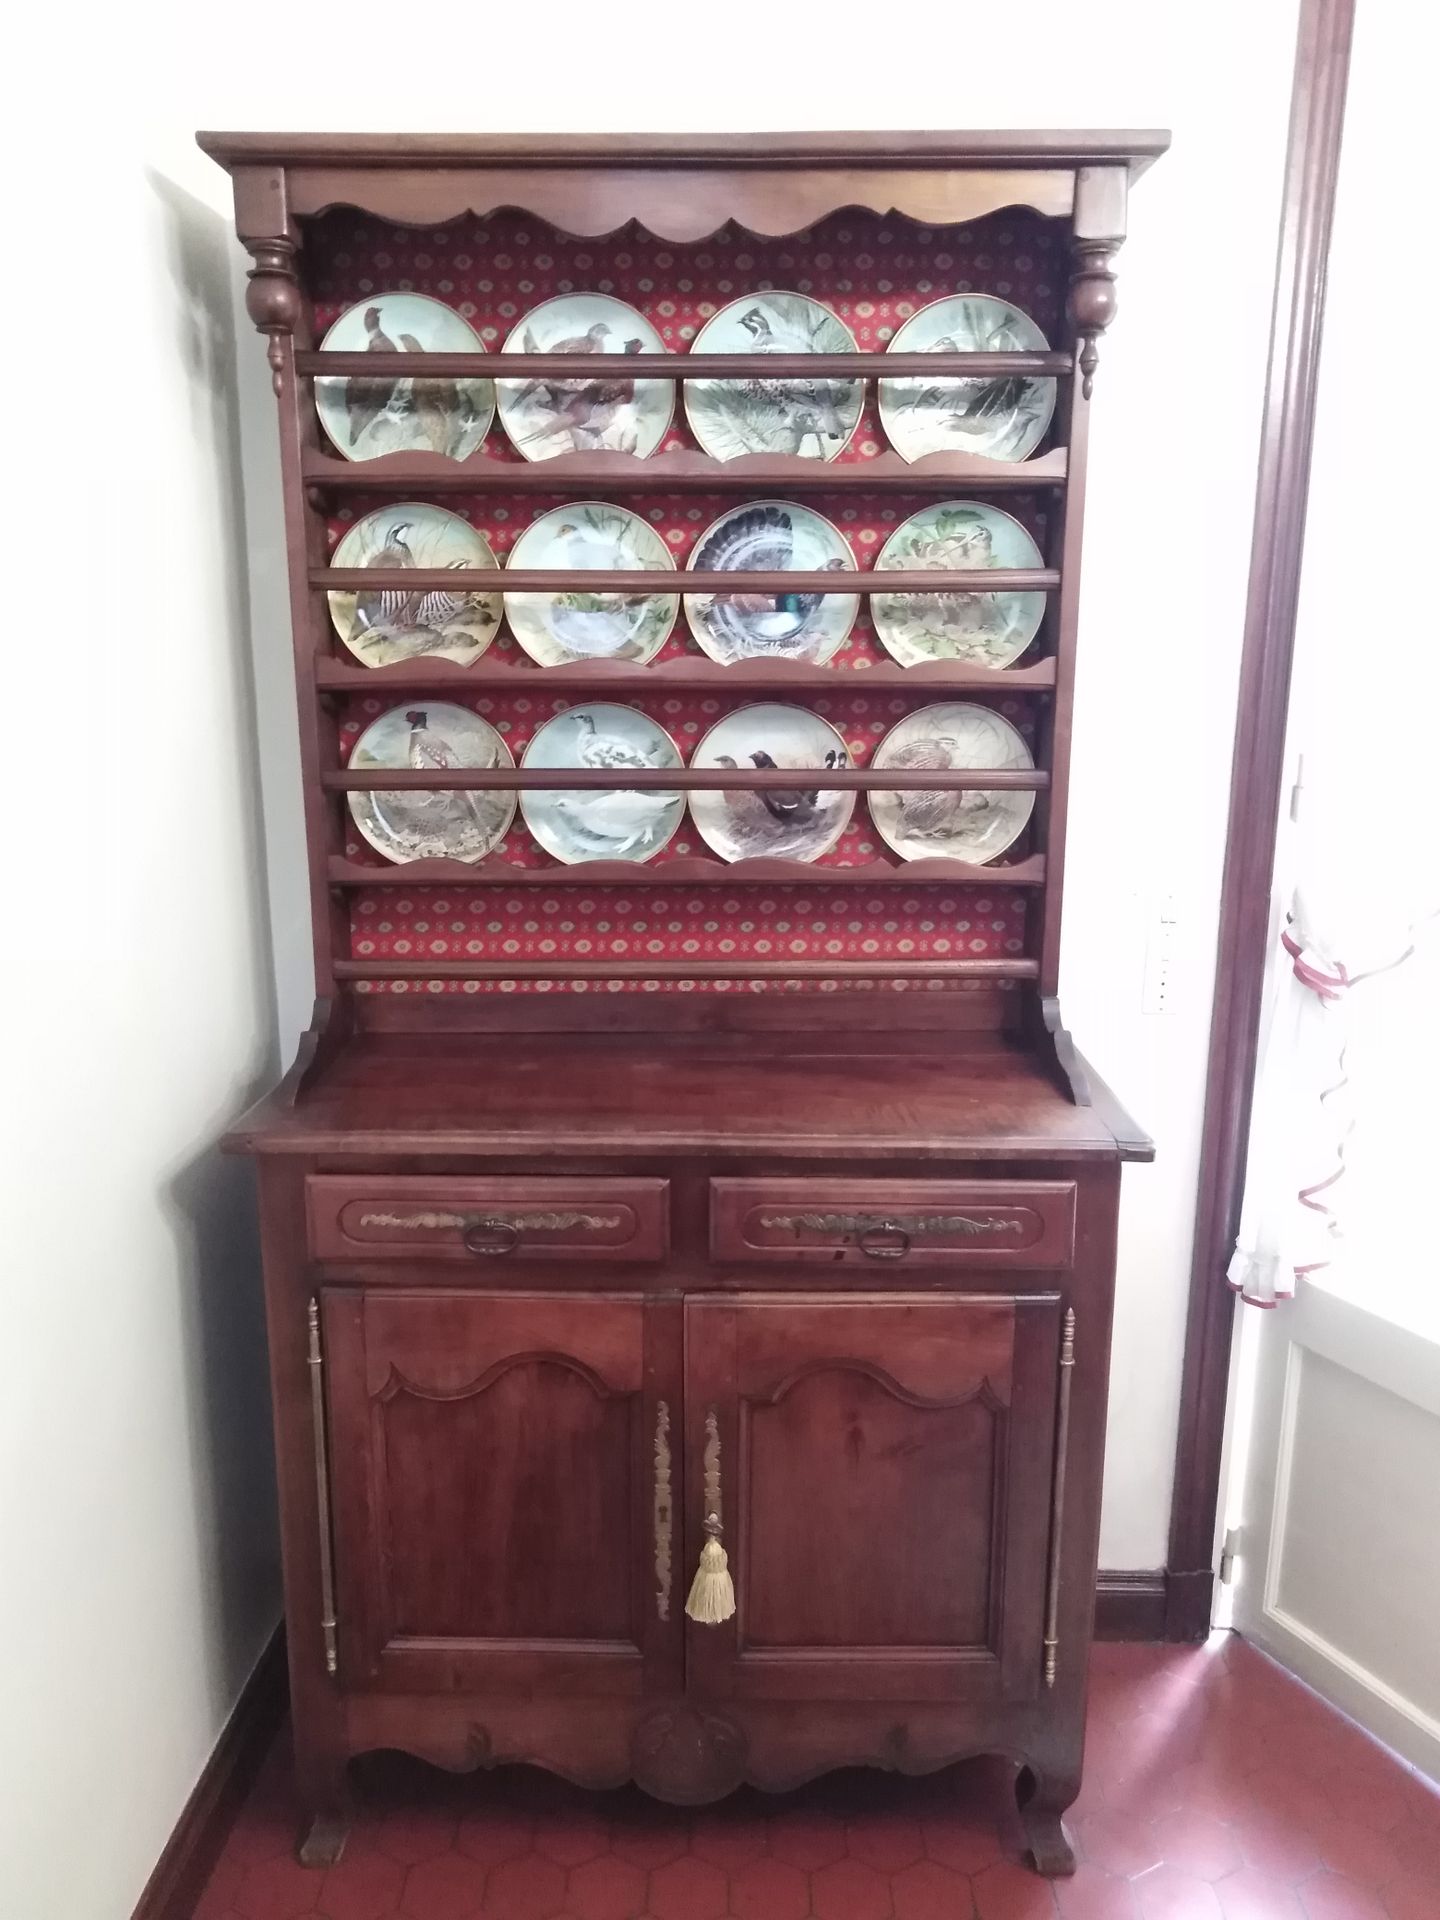 Null 樱桃木小文迪恩瓷器柜

下部有两扇门，上部有一个三层的展示柜。

19世纪晚期

206 x 104 x 47.5厘米

使用和维护的条件